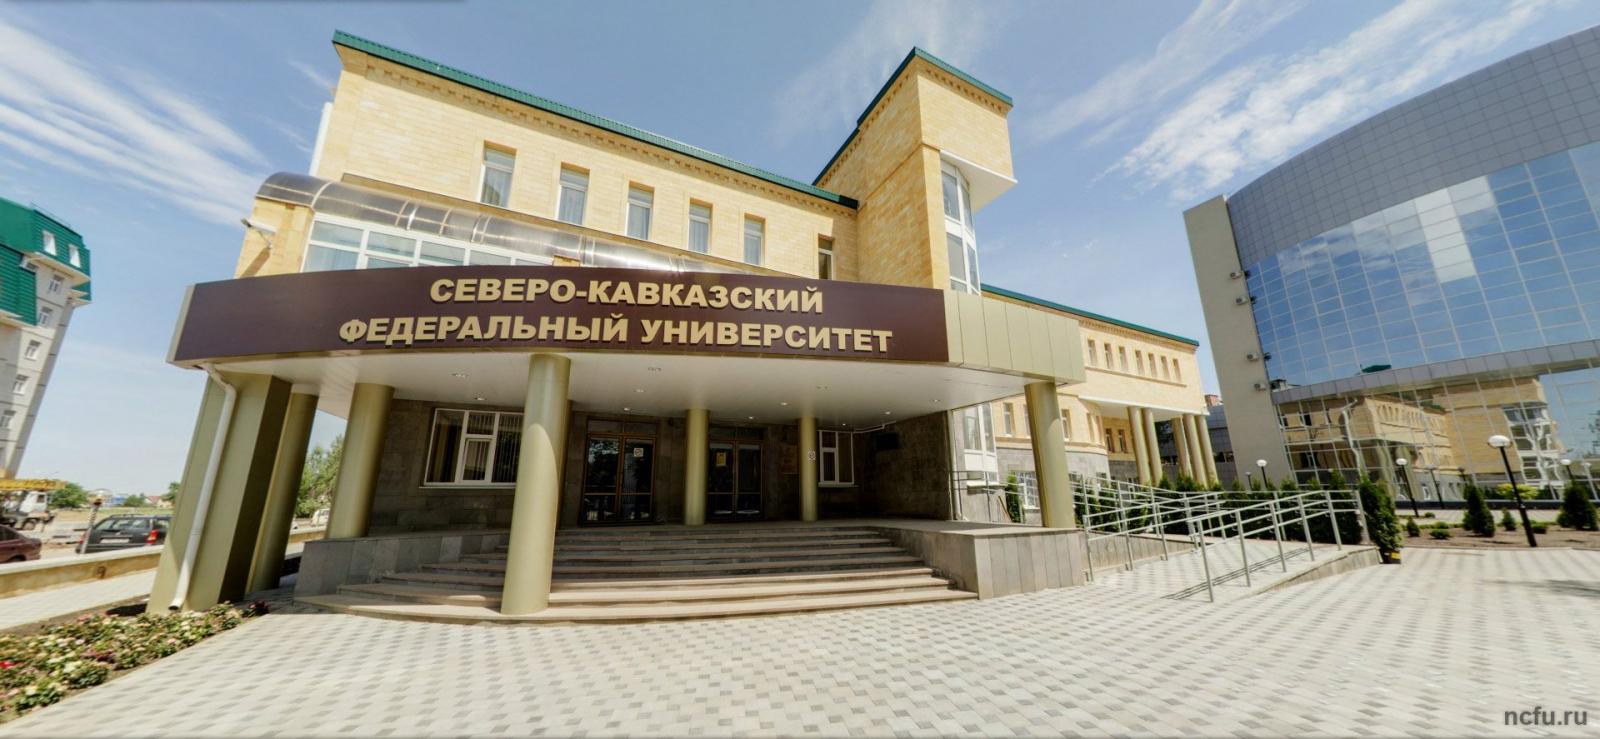 СКФУ – Северо-Кавказский федеральный университет